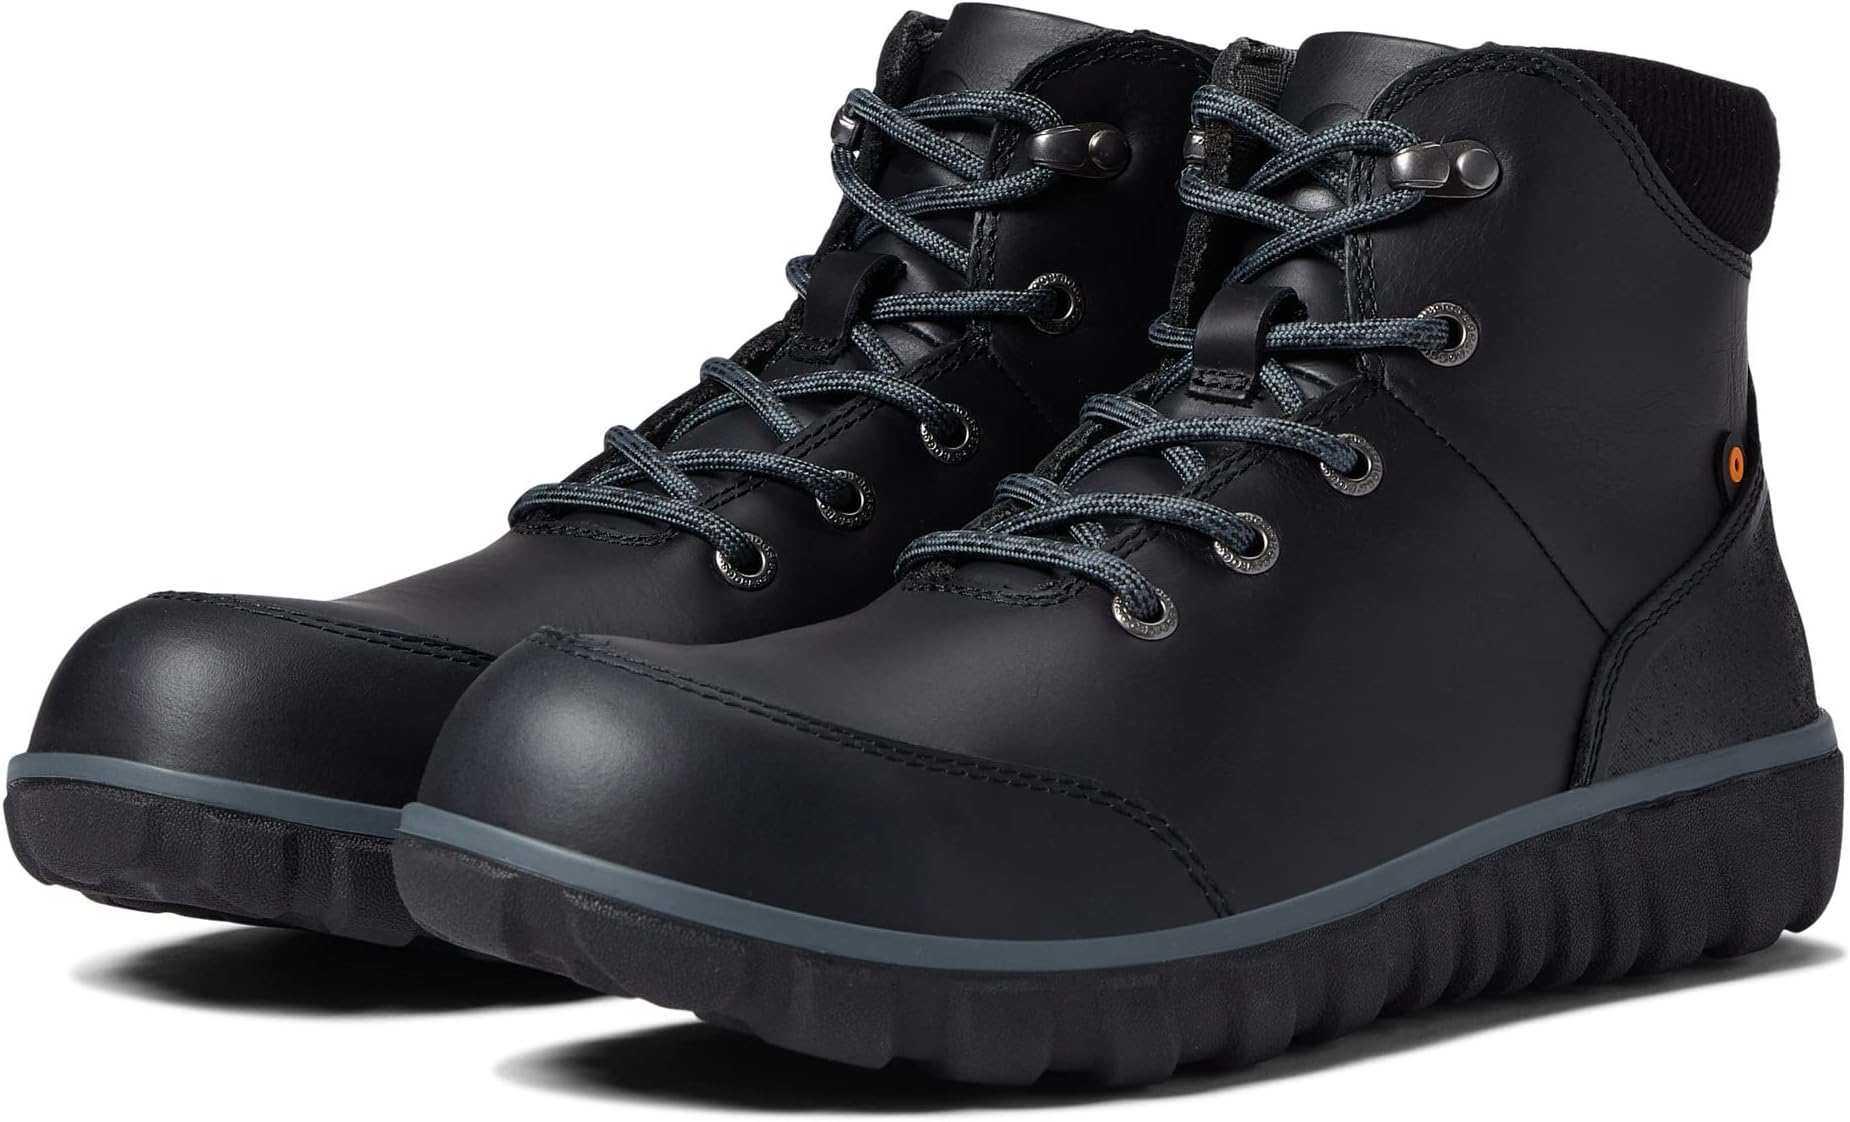 Рабочая обувь с композитным носком Benson Composite Safety Toe Bogs, черный рабочая обувь с композитным носком warrior composite toe dan post коричневая кожа